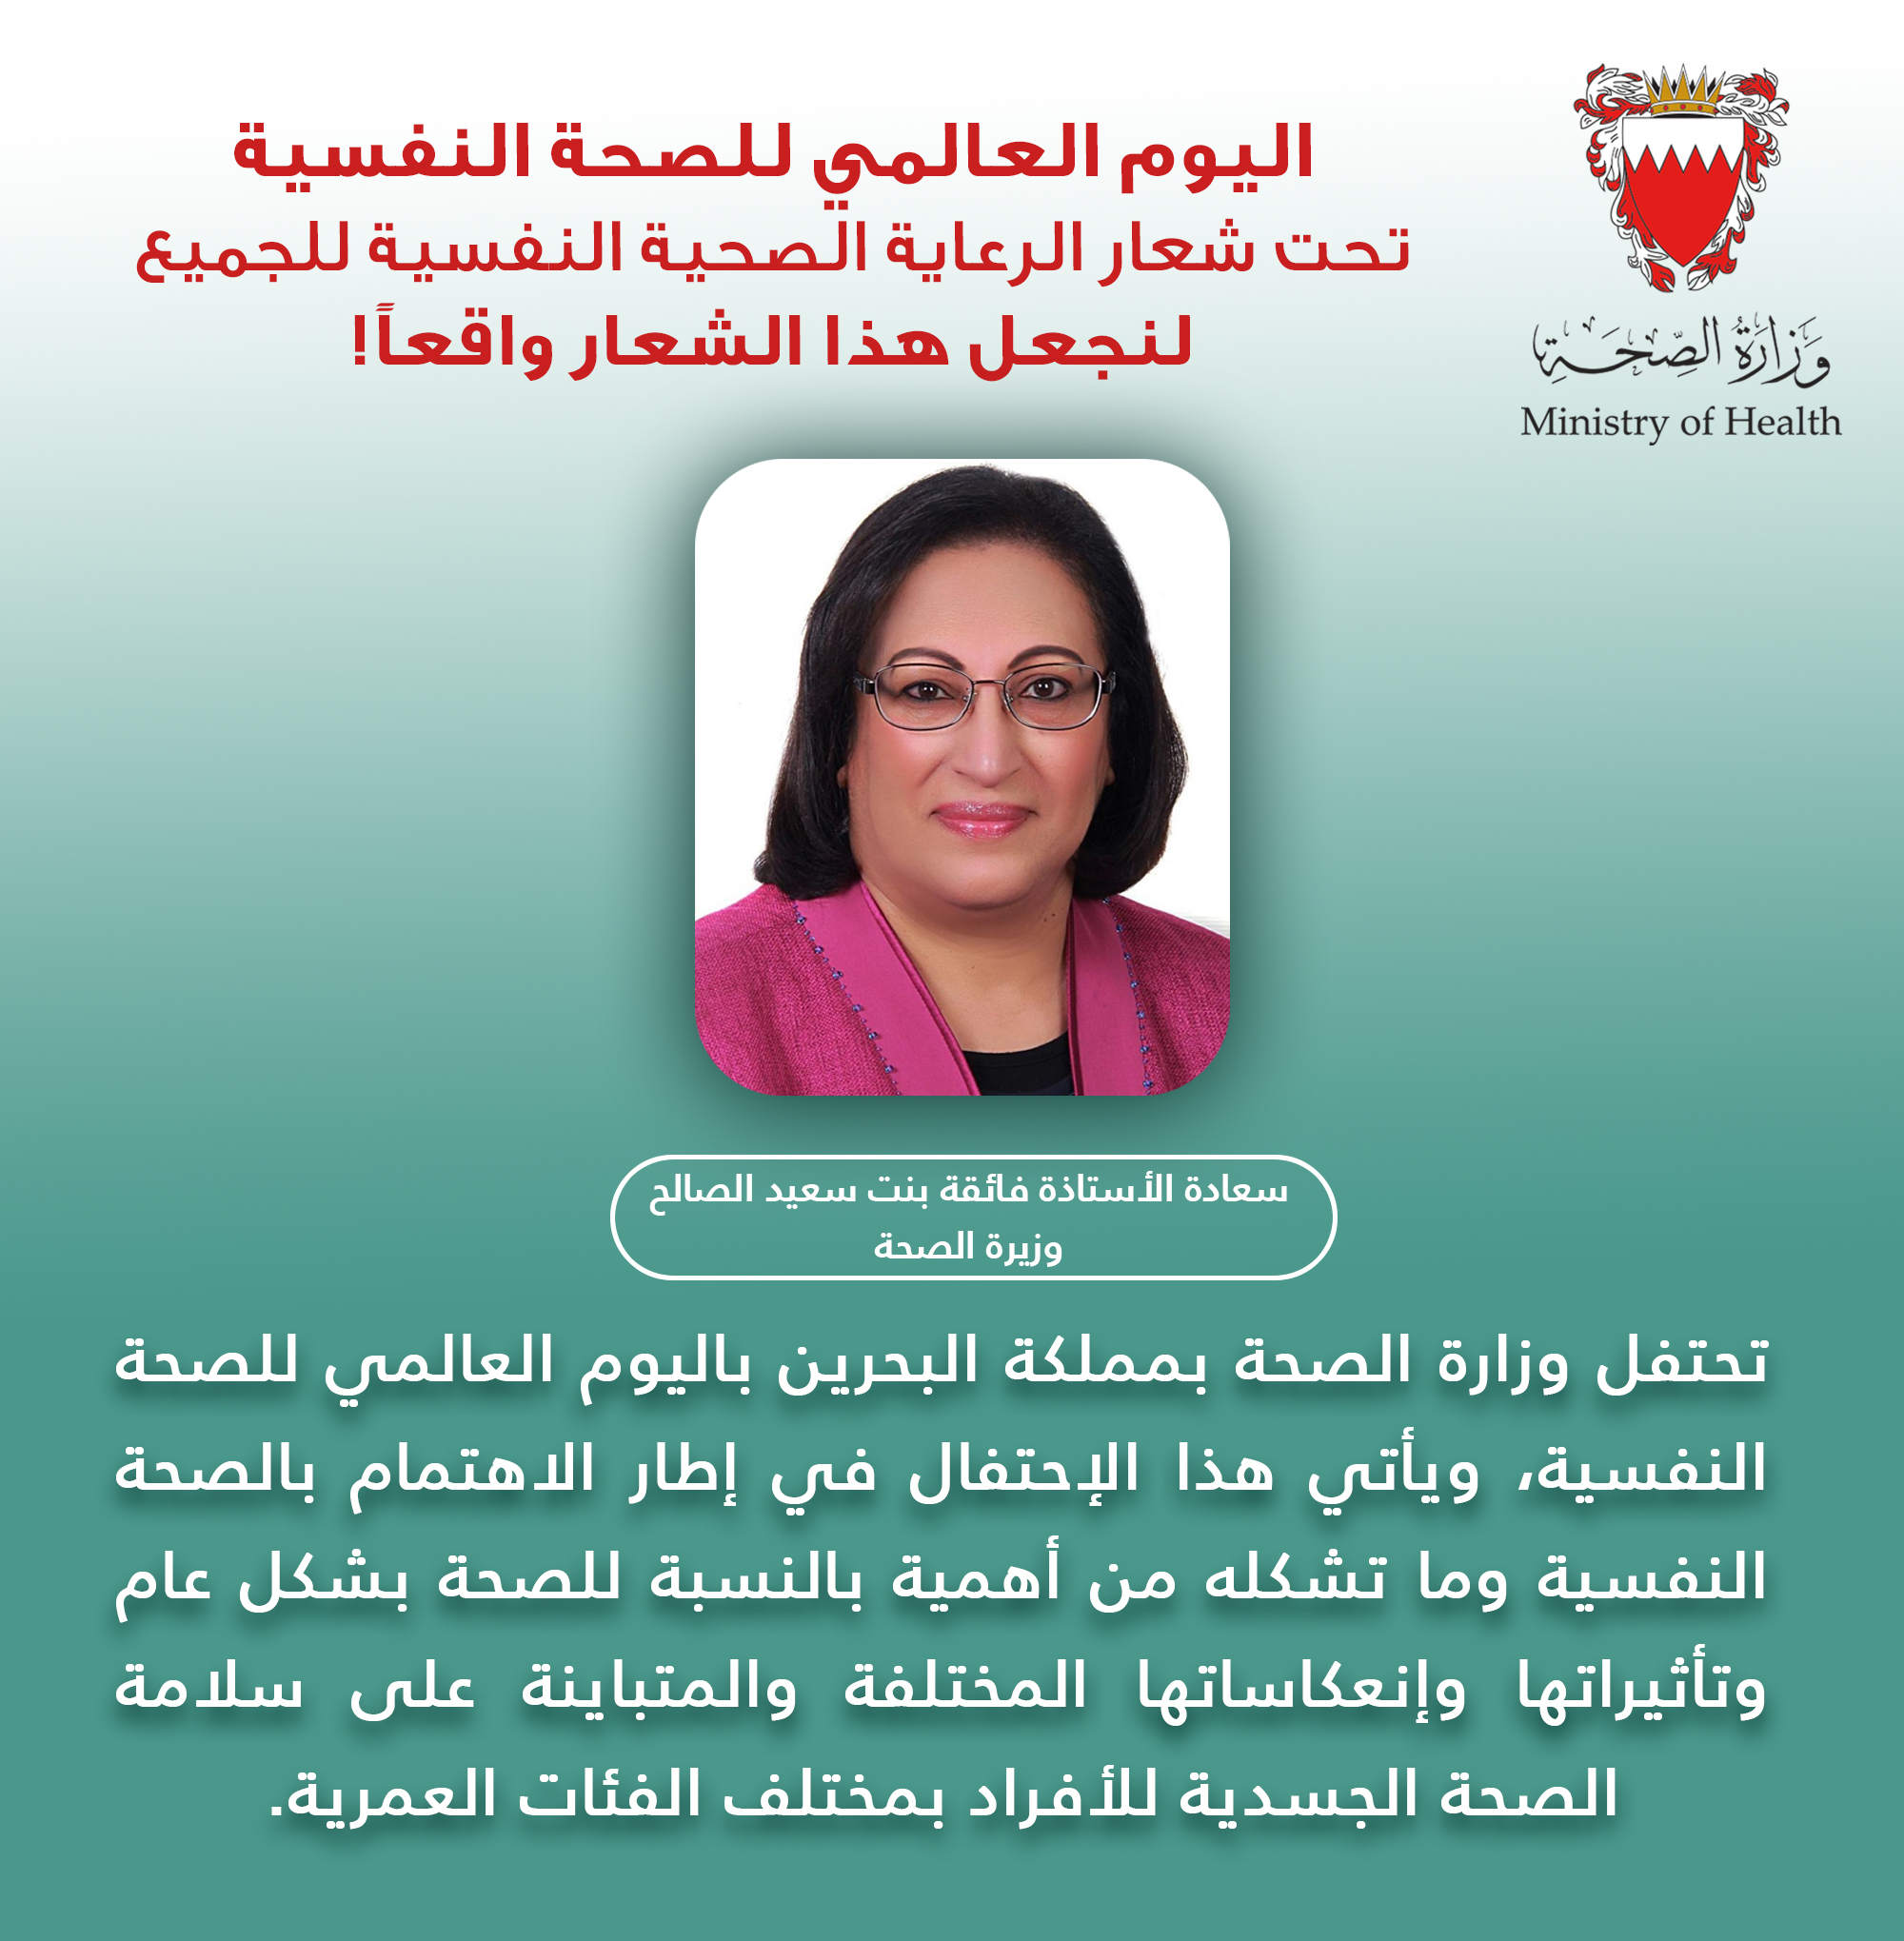 بيان لسعادة وزيرة الصحة الأستاذة فائقة بنت سعيد الصالح بمناسبة اليوم العالمي للصحة النفسية 